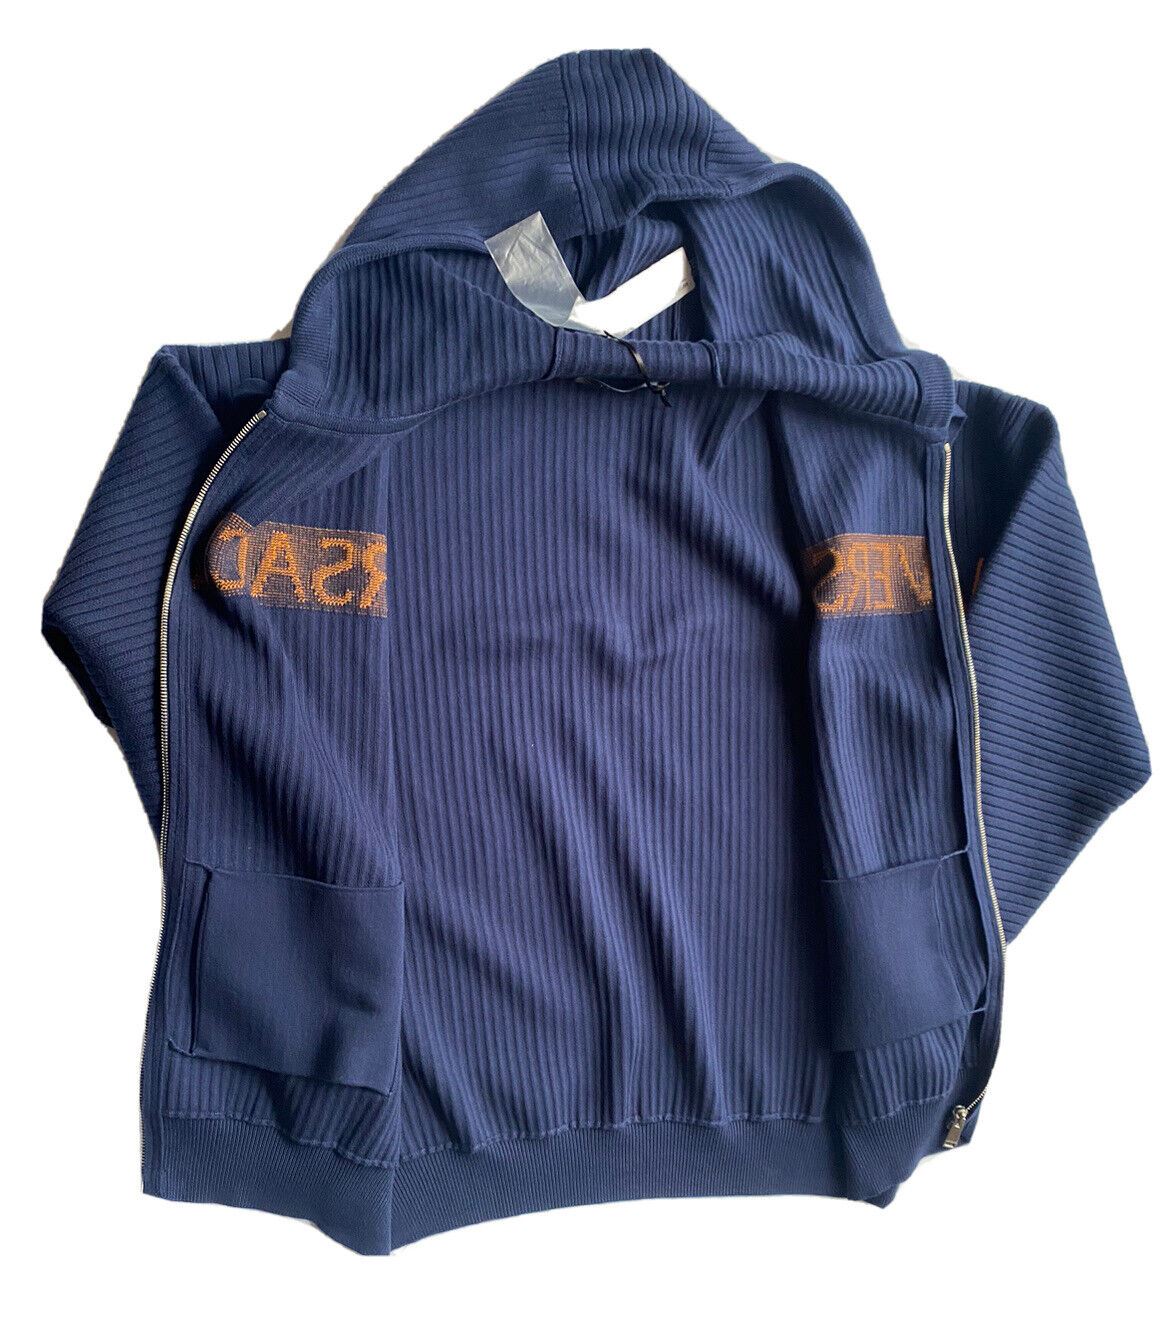 Мужская вязаная куртка Versace с худи синего цвета NWT 995 долларов США 48 США (58 евро) A237551 IT 